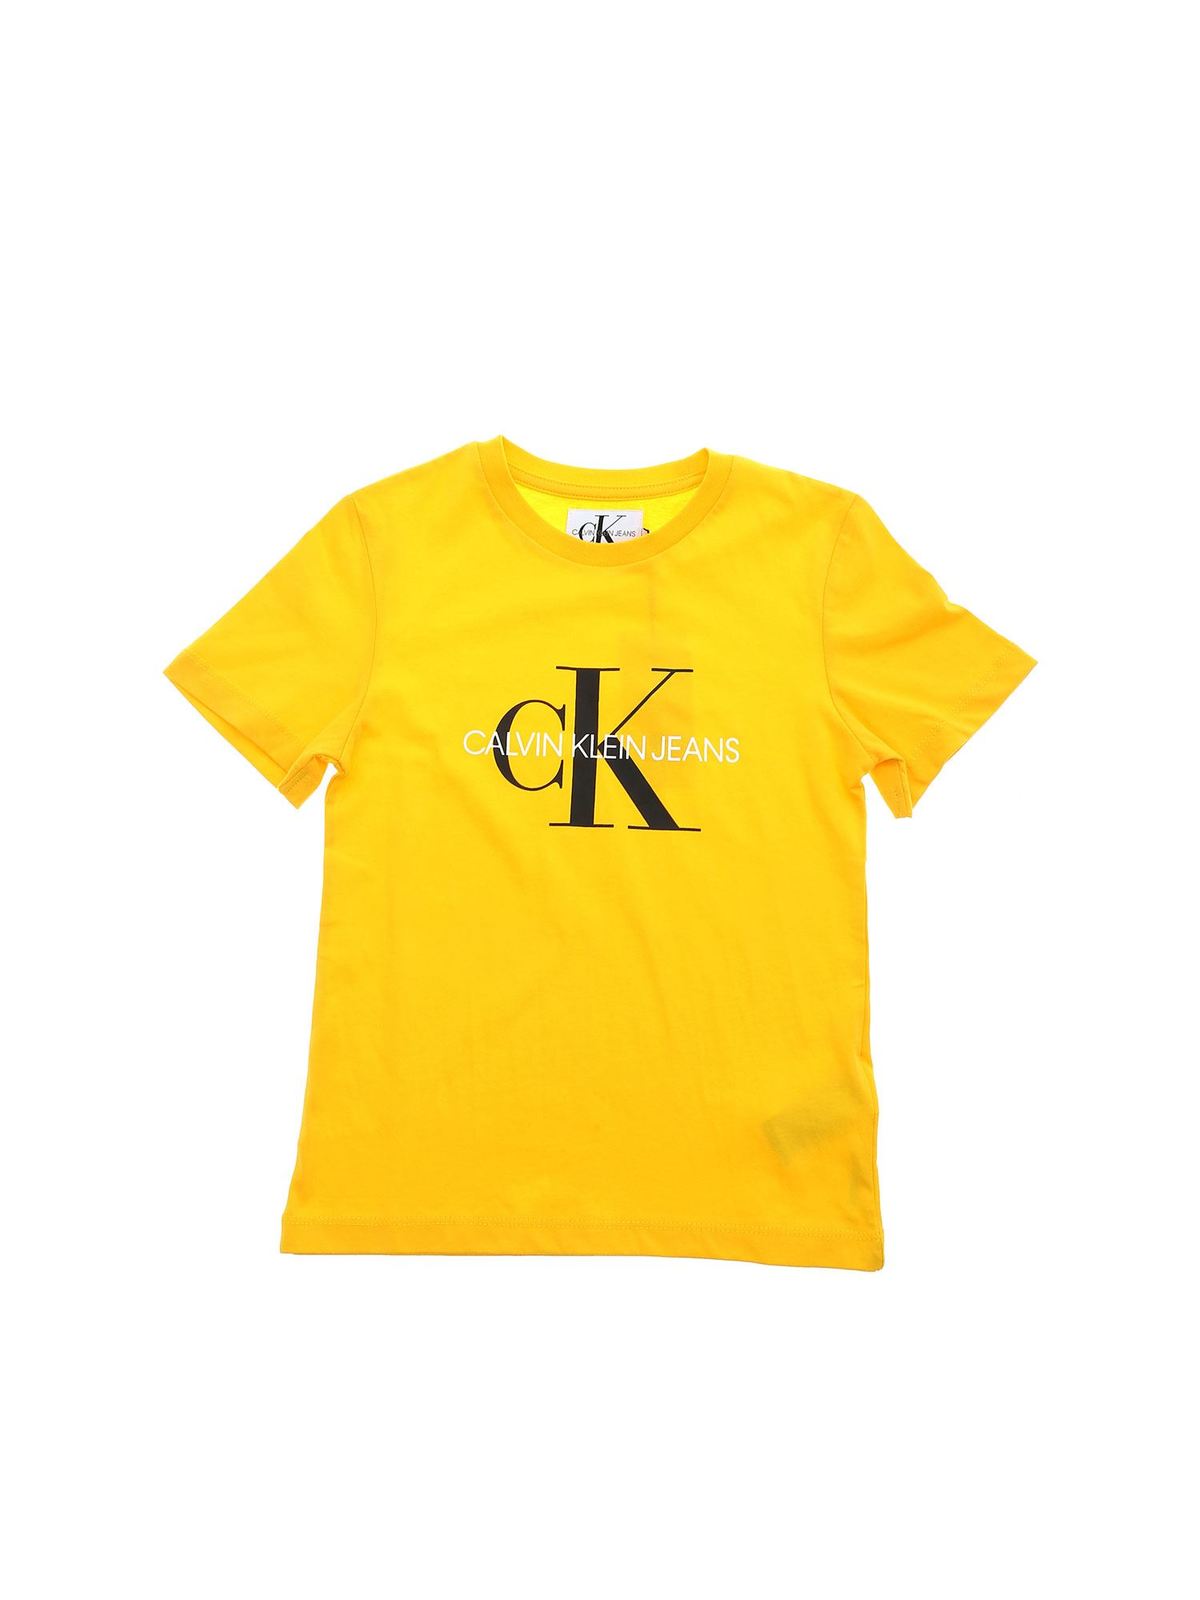 Klein Jeans - Camiseta - - 1B01B00276704